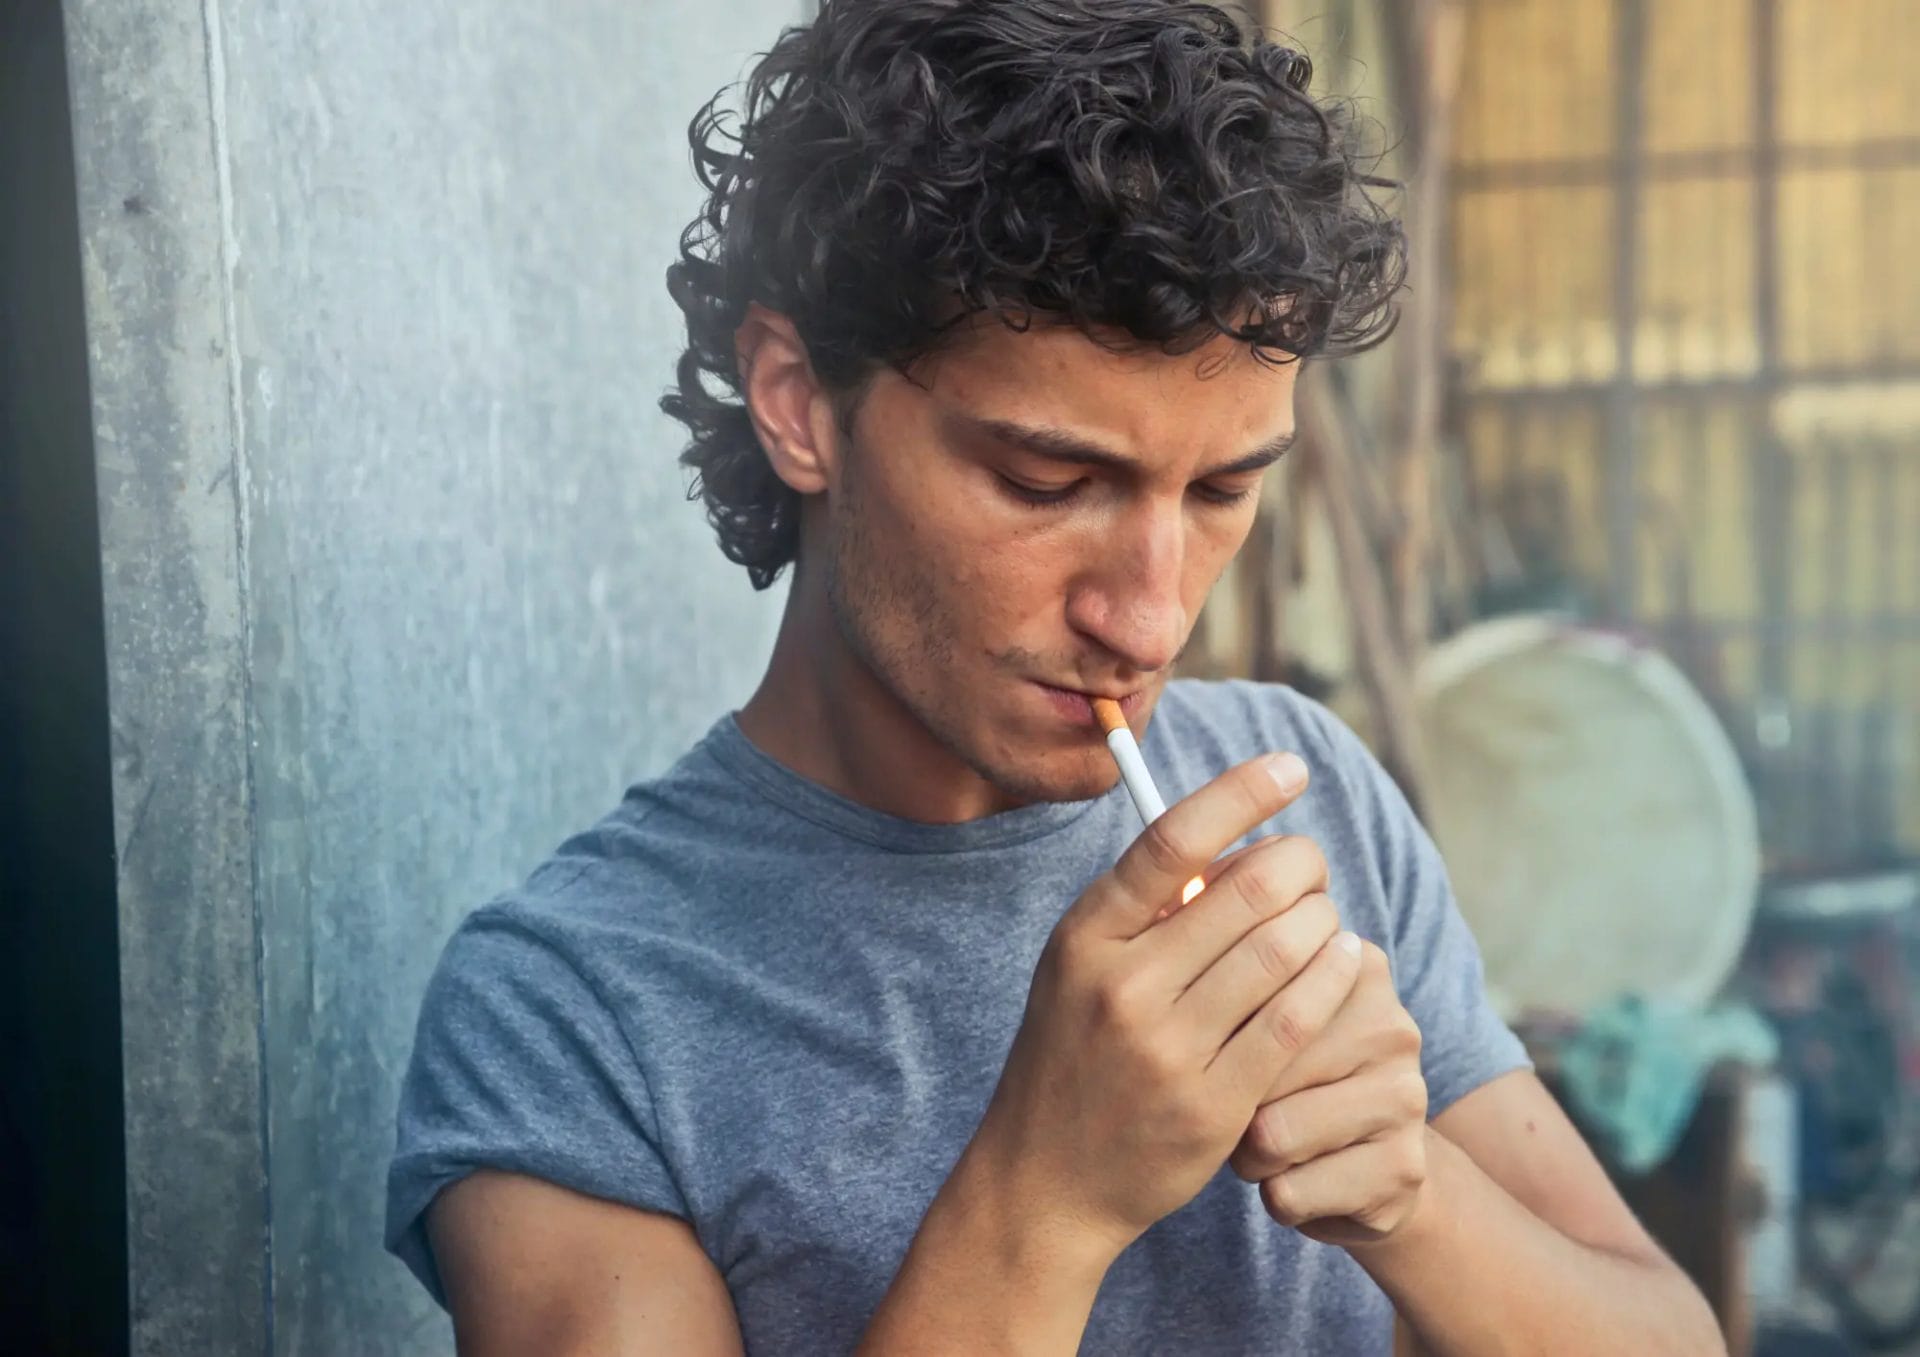 kebiasaan merokok dan konsumsi alkohol berlebihan dapat menjadi penyebab susah ereksi pada pria muda